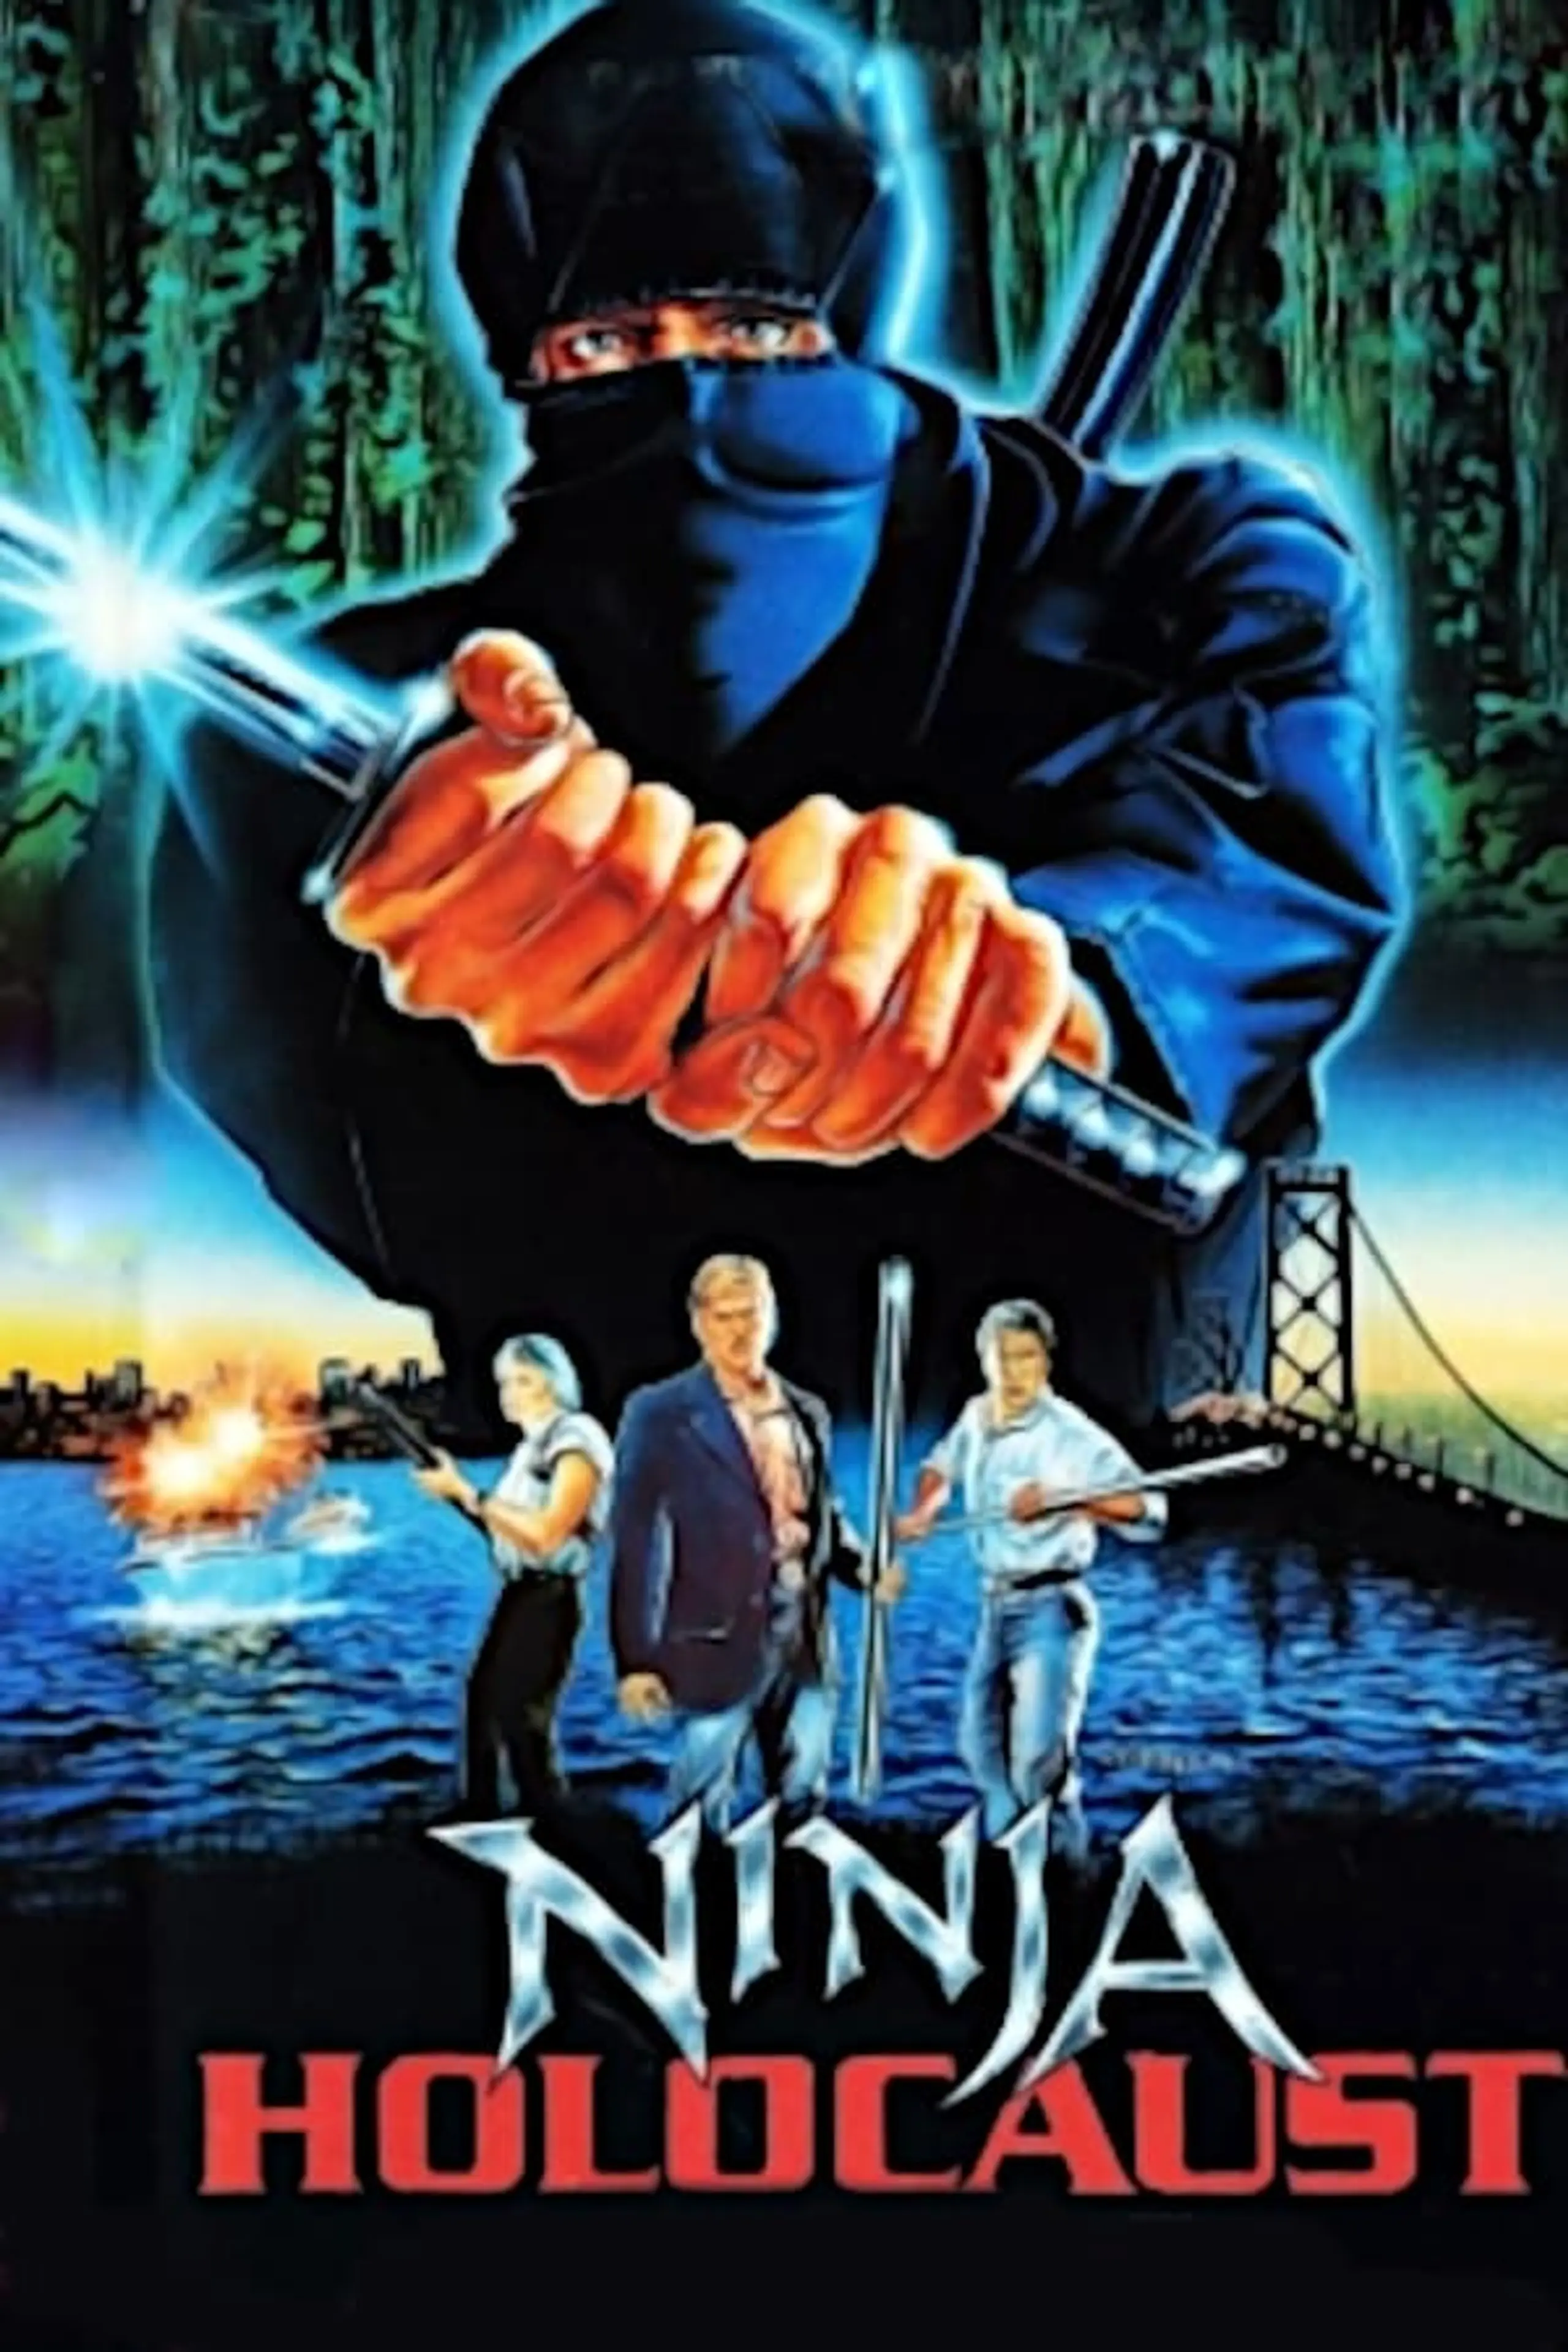 Das Vermächtnis der Ninja